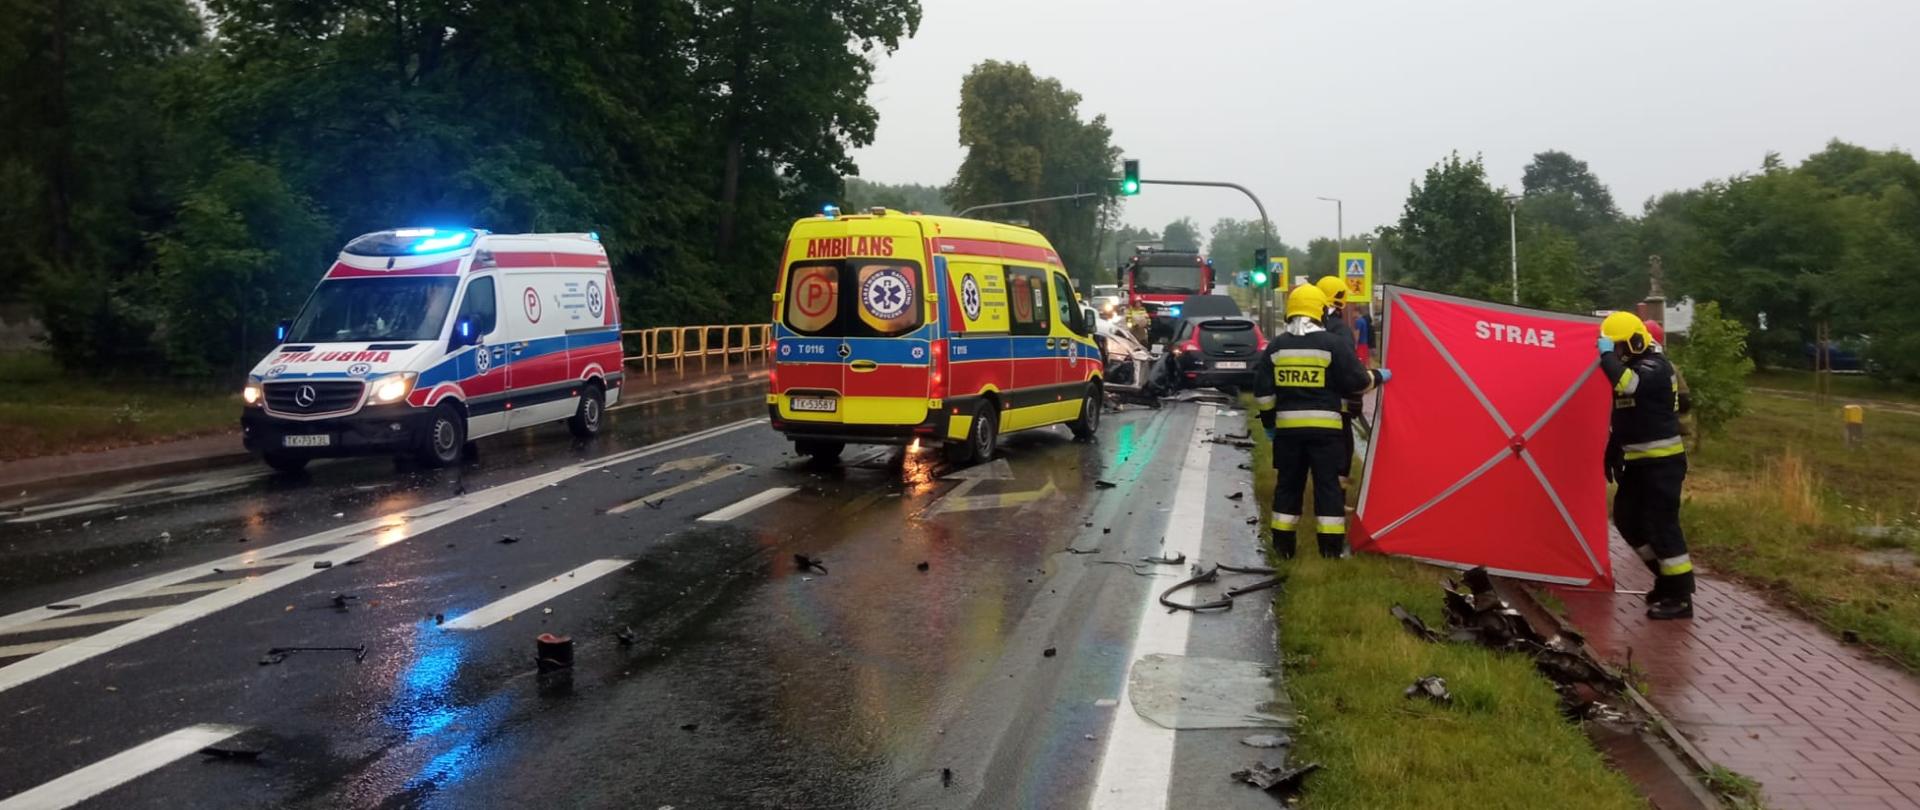 Zdjęcie przedstawia drogę krajową numer 74. Na pierwszym planie stoją dwa ambulanse pogotowia medycznego, w głębi widać zniszczone auta, a po lewej parawan osłaniający oraz strażaków.